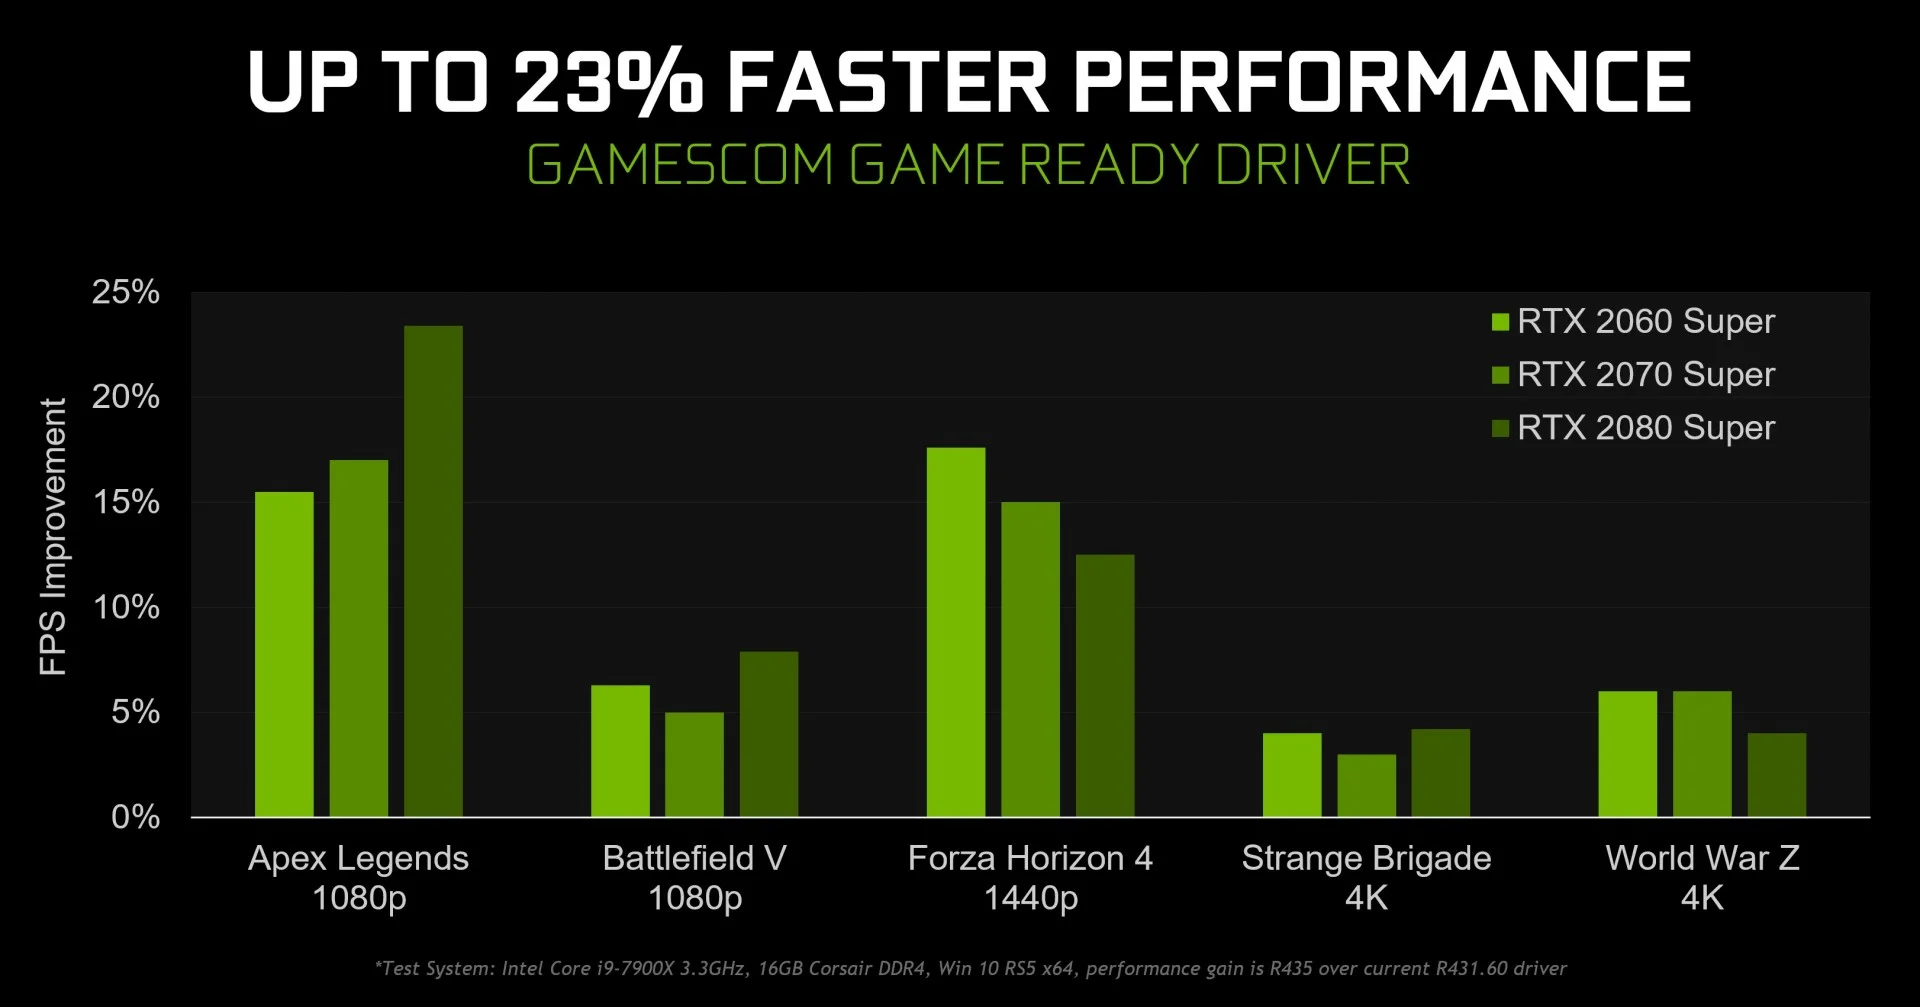 Новый драйвер NVIDIA улучшил производительность в Battlefield 5, Apex Legends и не только - фото 1